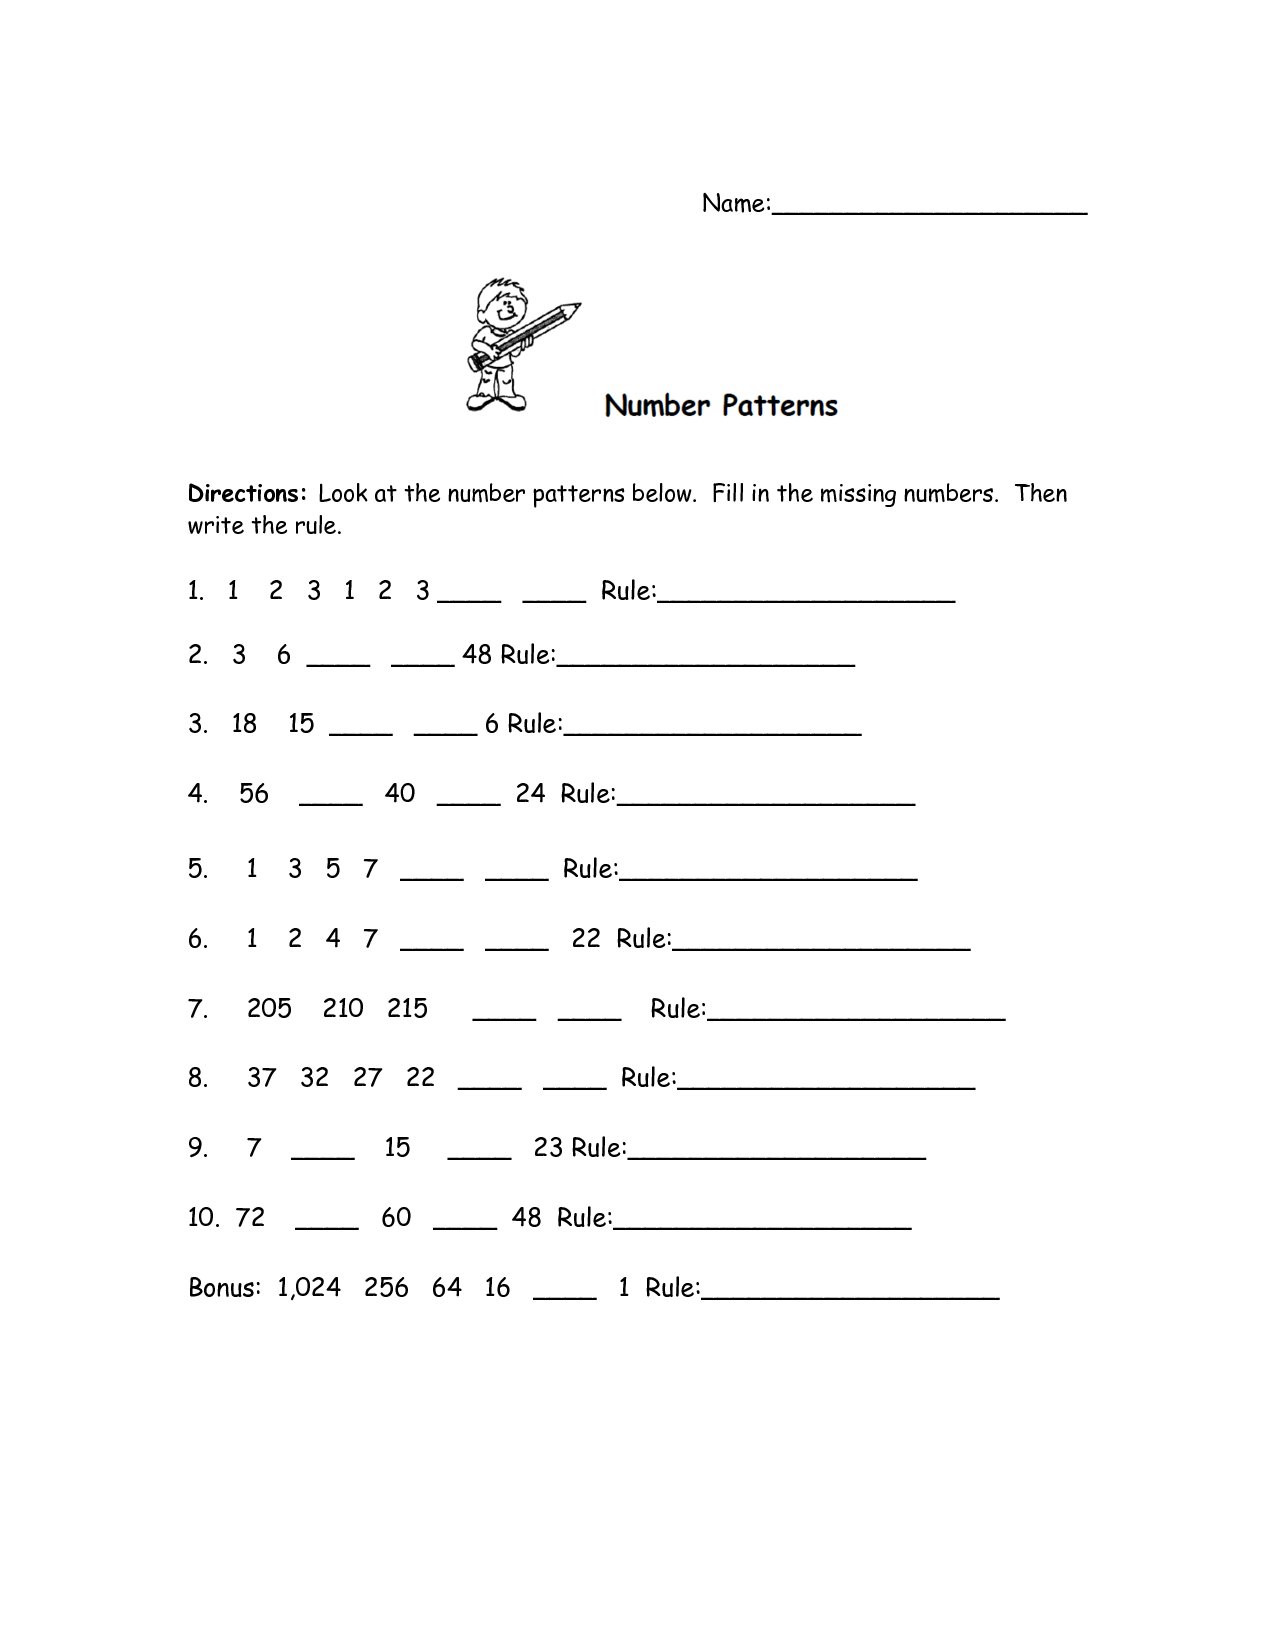 Number Patterns Worksheets 4th Grade Image